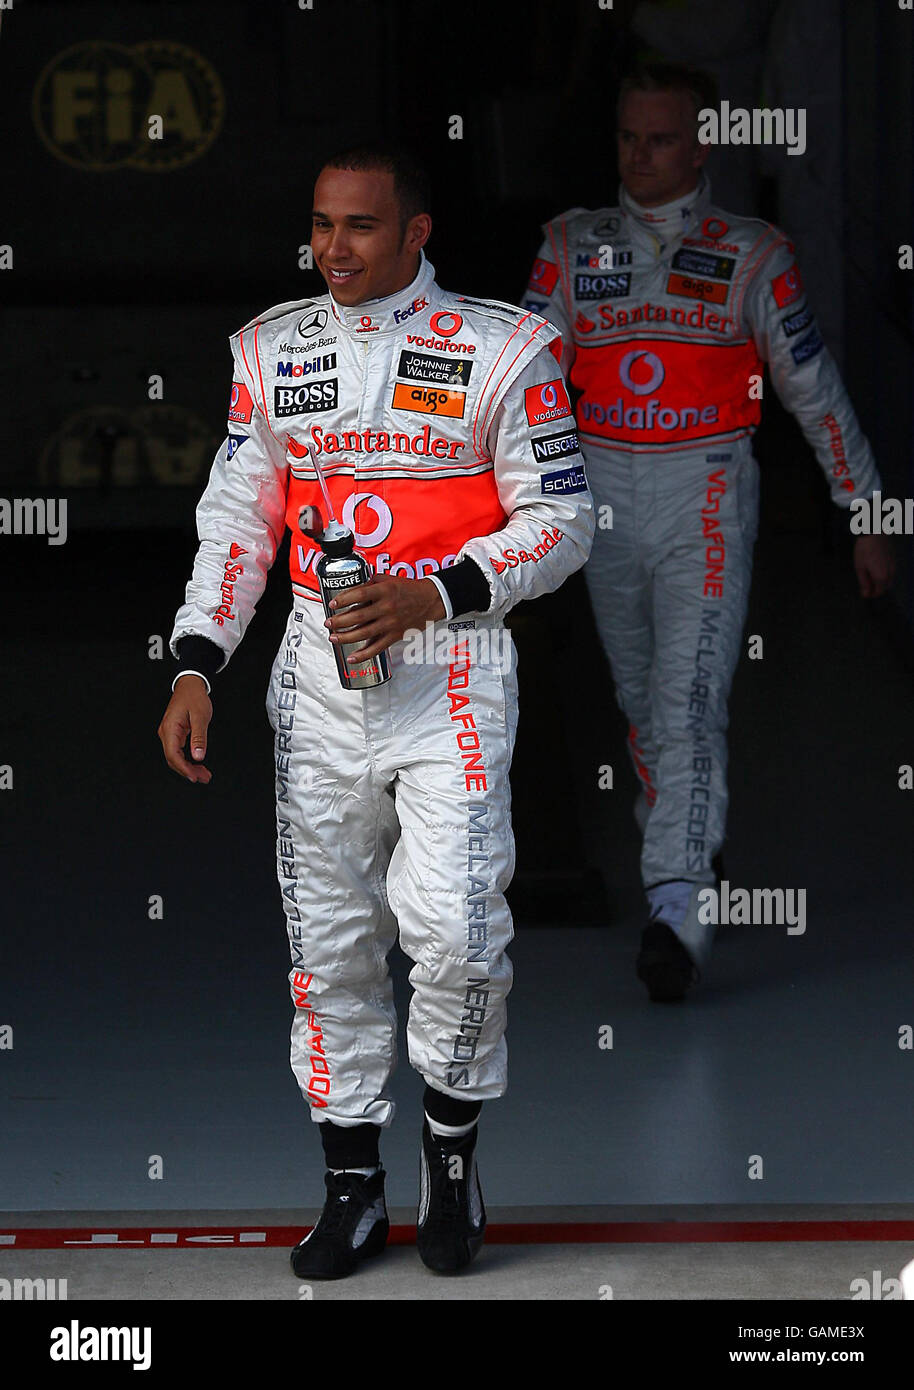 Lewis Hamilton de Gran Bretaña y su compañero Heikki Kovalainen durante la clasificación en Albert Park, Melbourne, Australia. Foto de stock